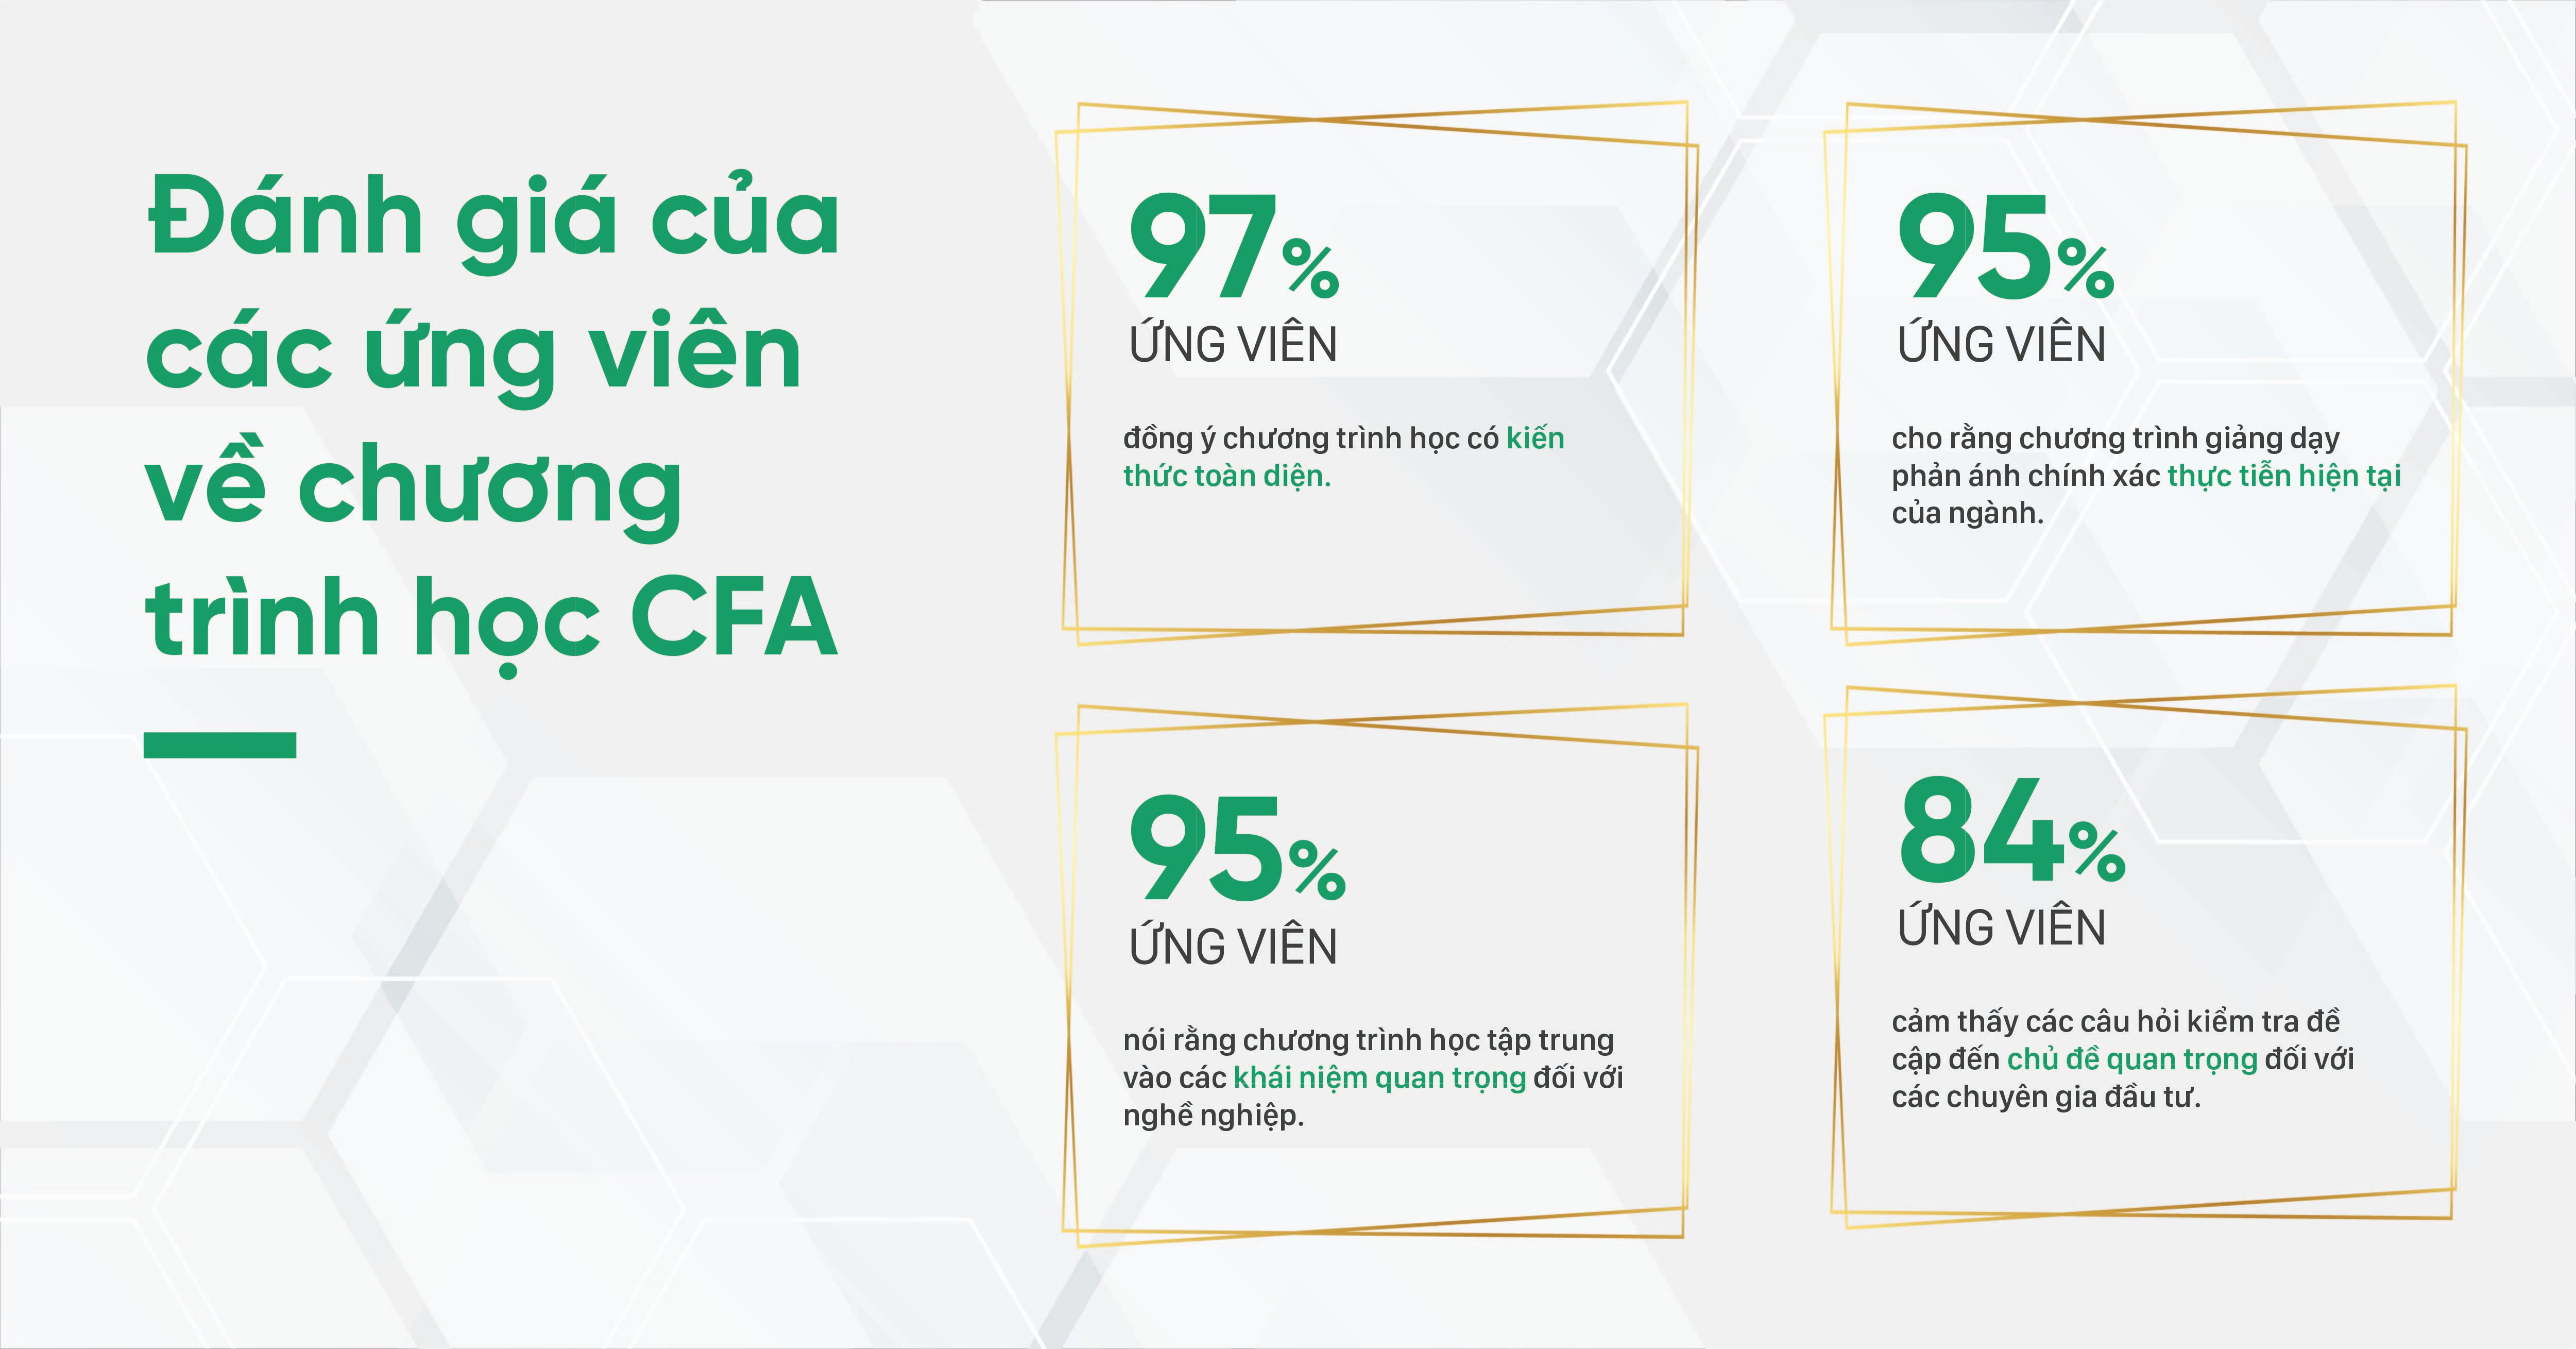 Ảnh 1: Đánh giá của các ứng viên về chương trình học CFA